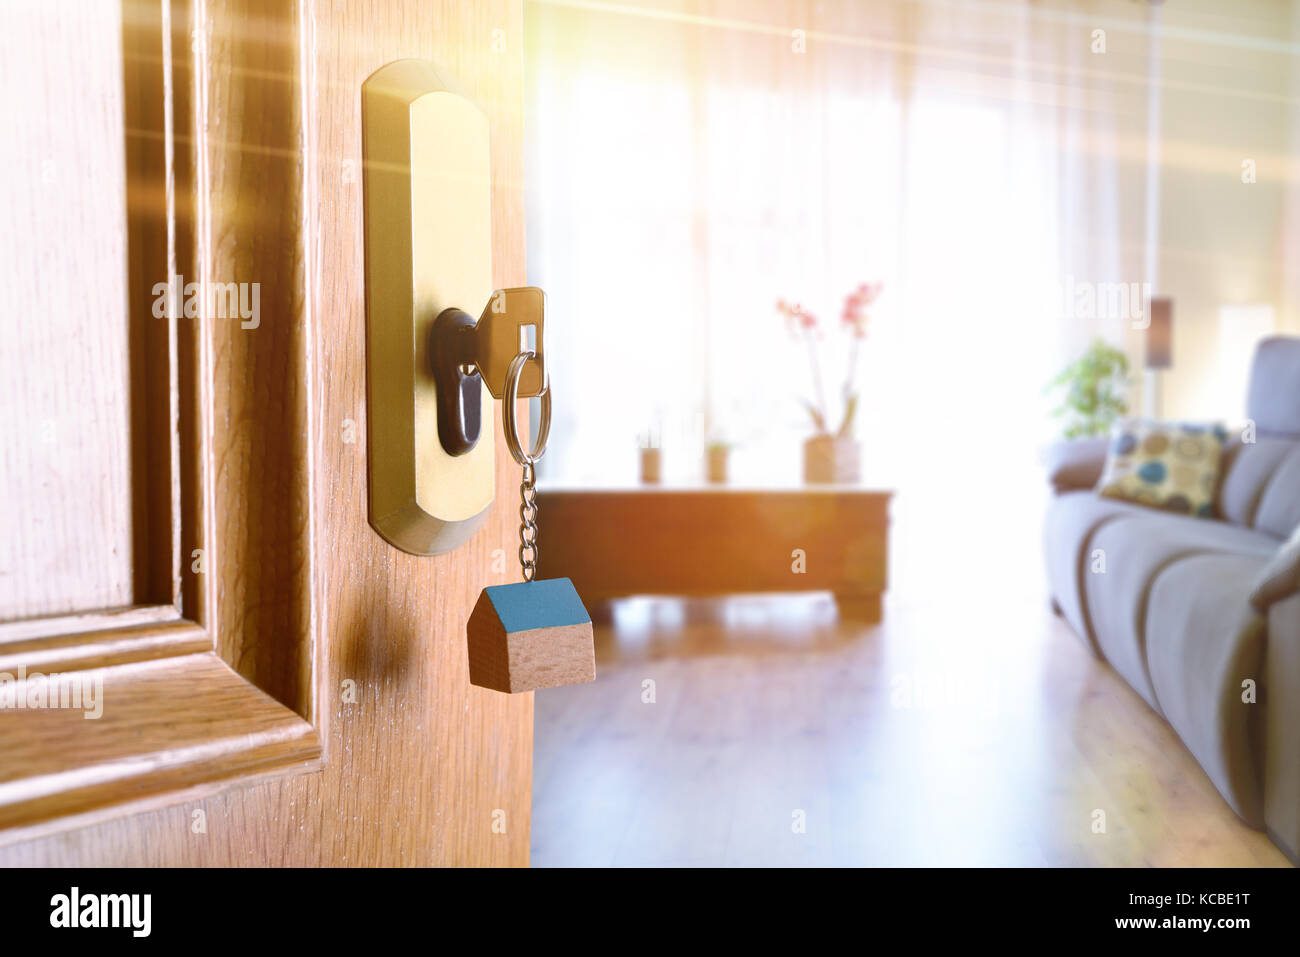 Abrir puerta de entrada detalle de una casa con las llaves en la cerradura y sala amueblada en el fondo con el efecto de luz dorada. Foto de stock